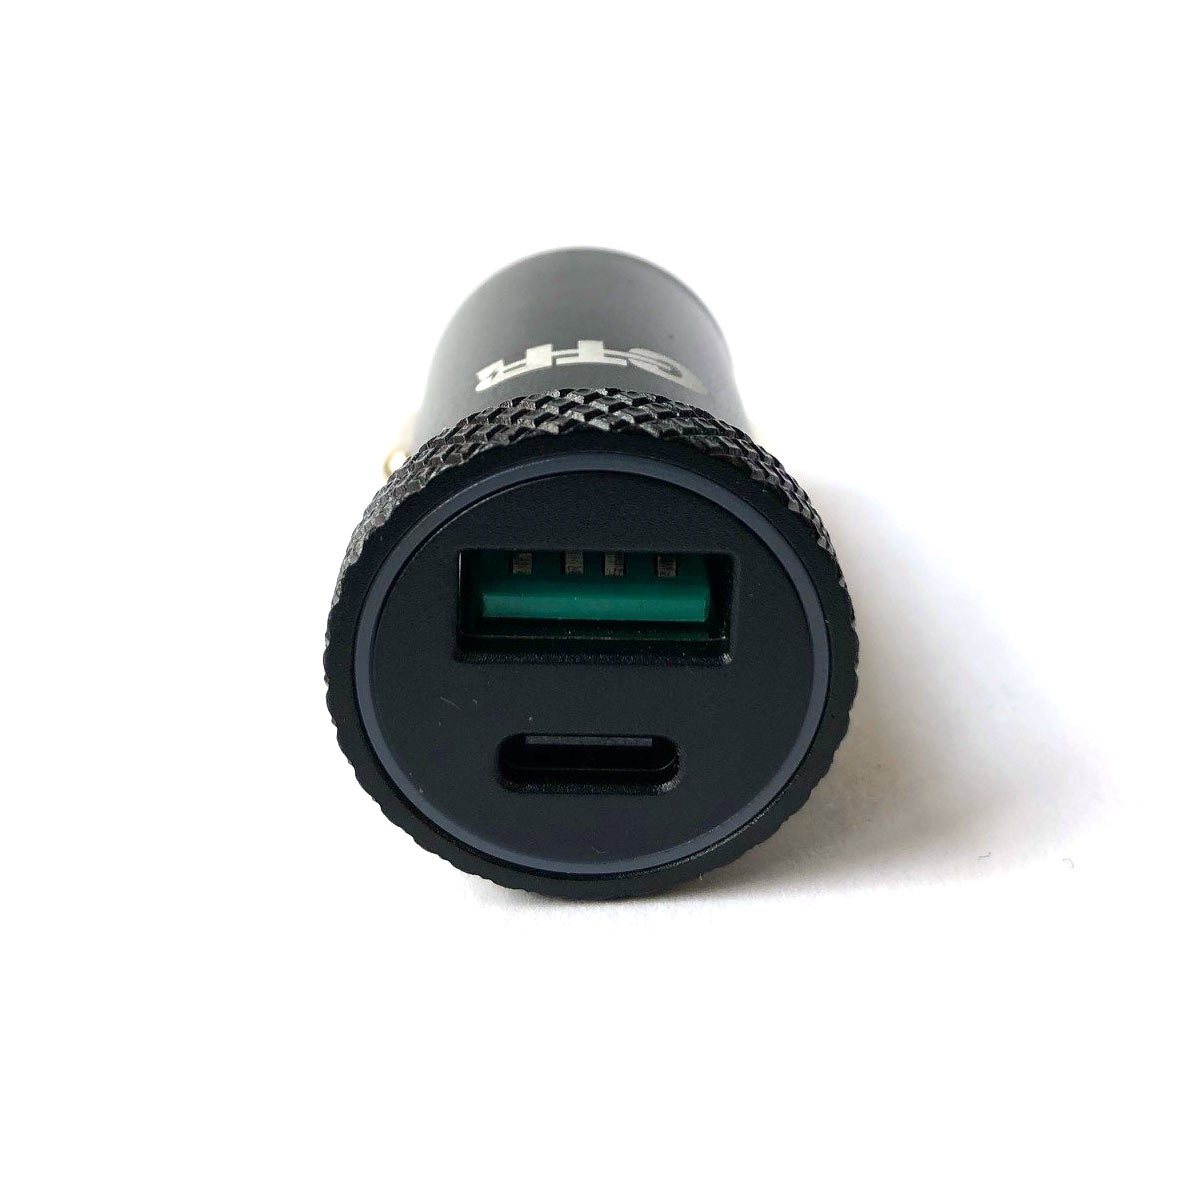 Embout adaptateur pour allume cigare avec prise USB